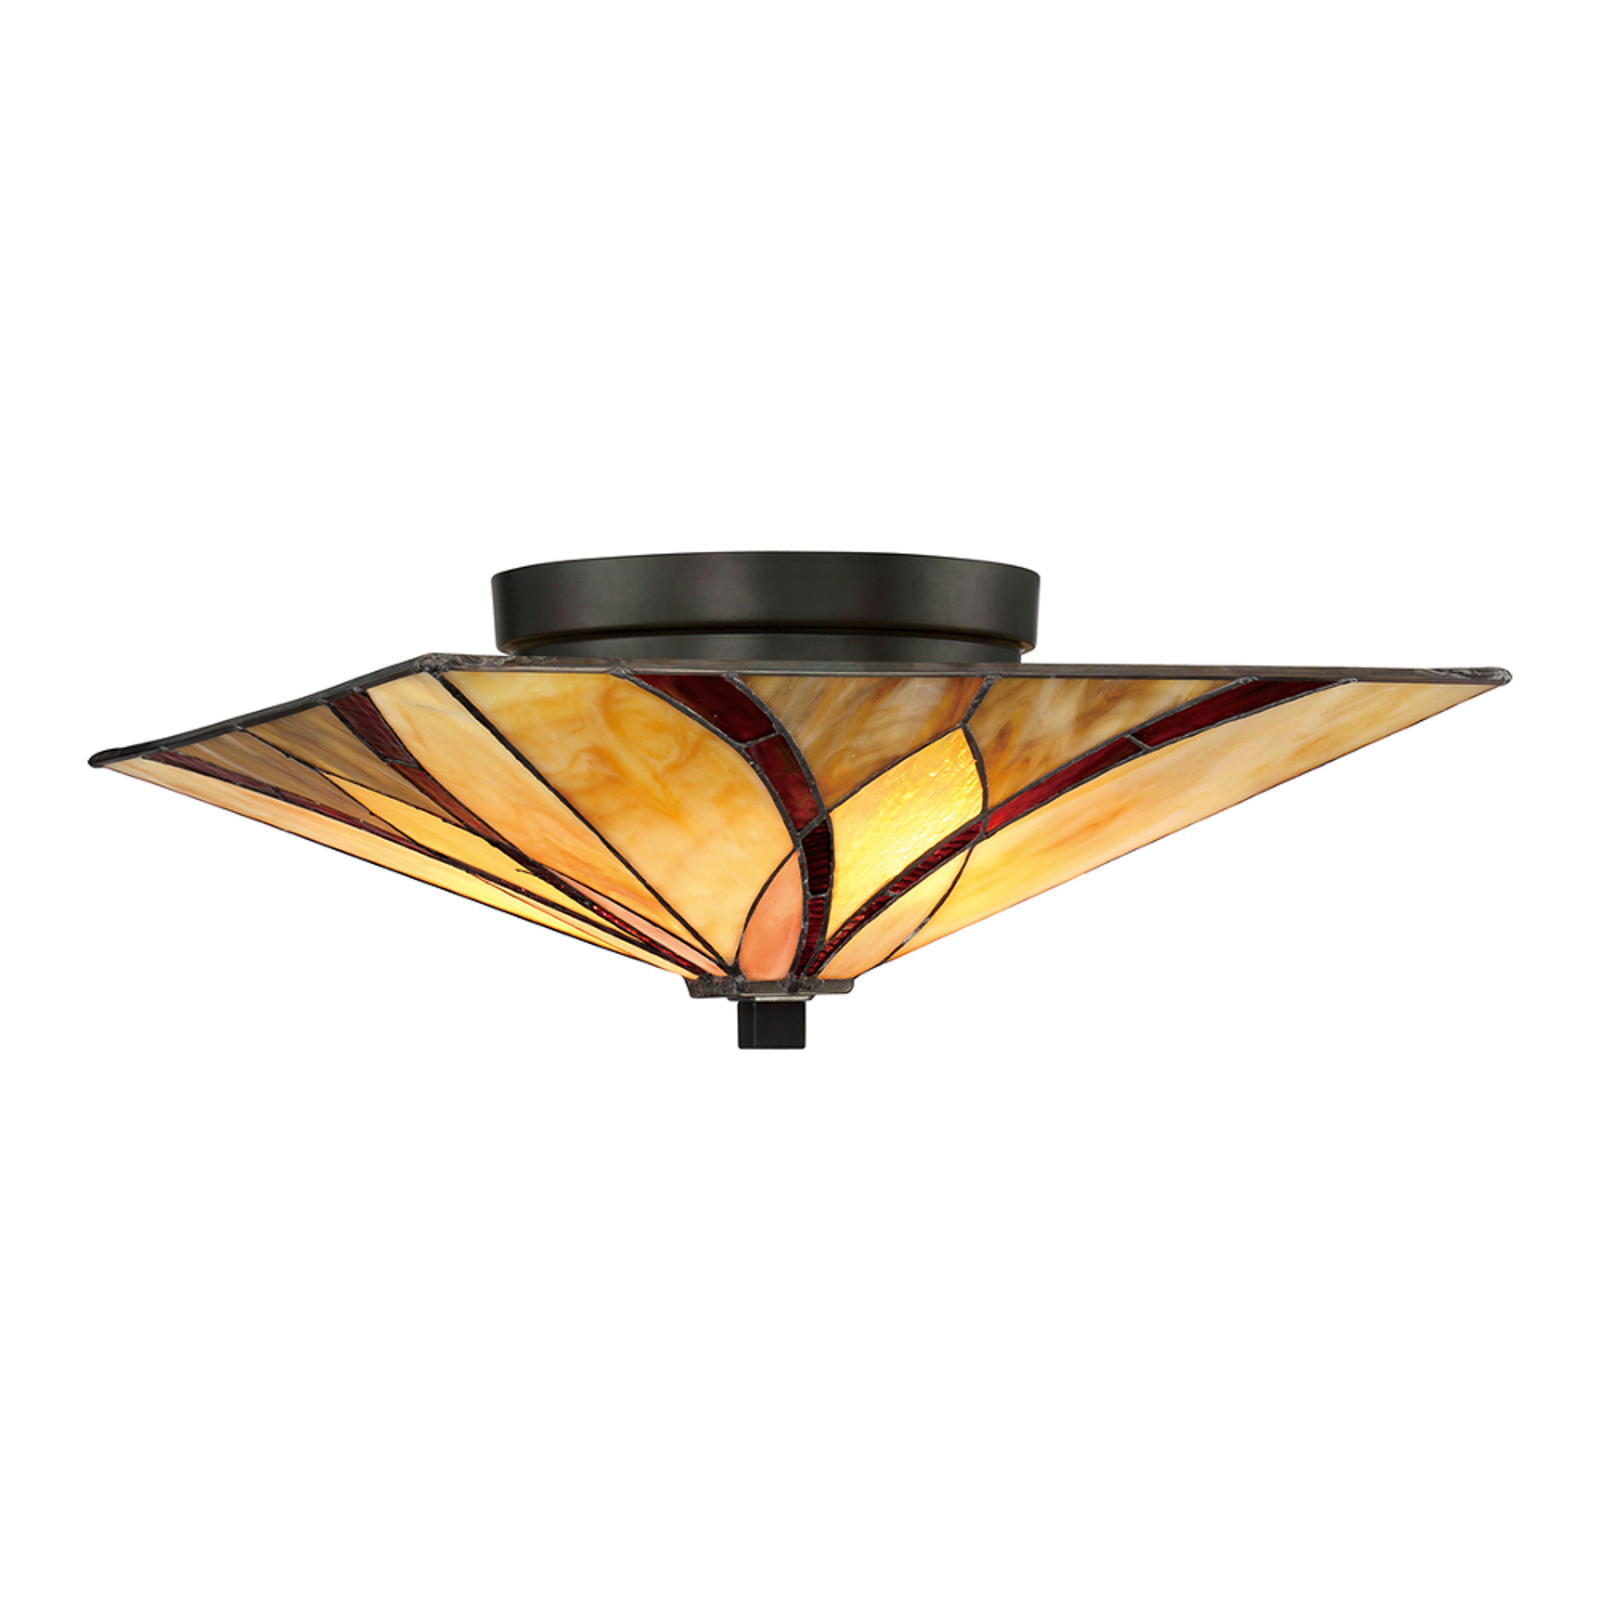 Asheville ceiling light Tiffany design, 16.7 cm